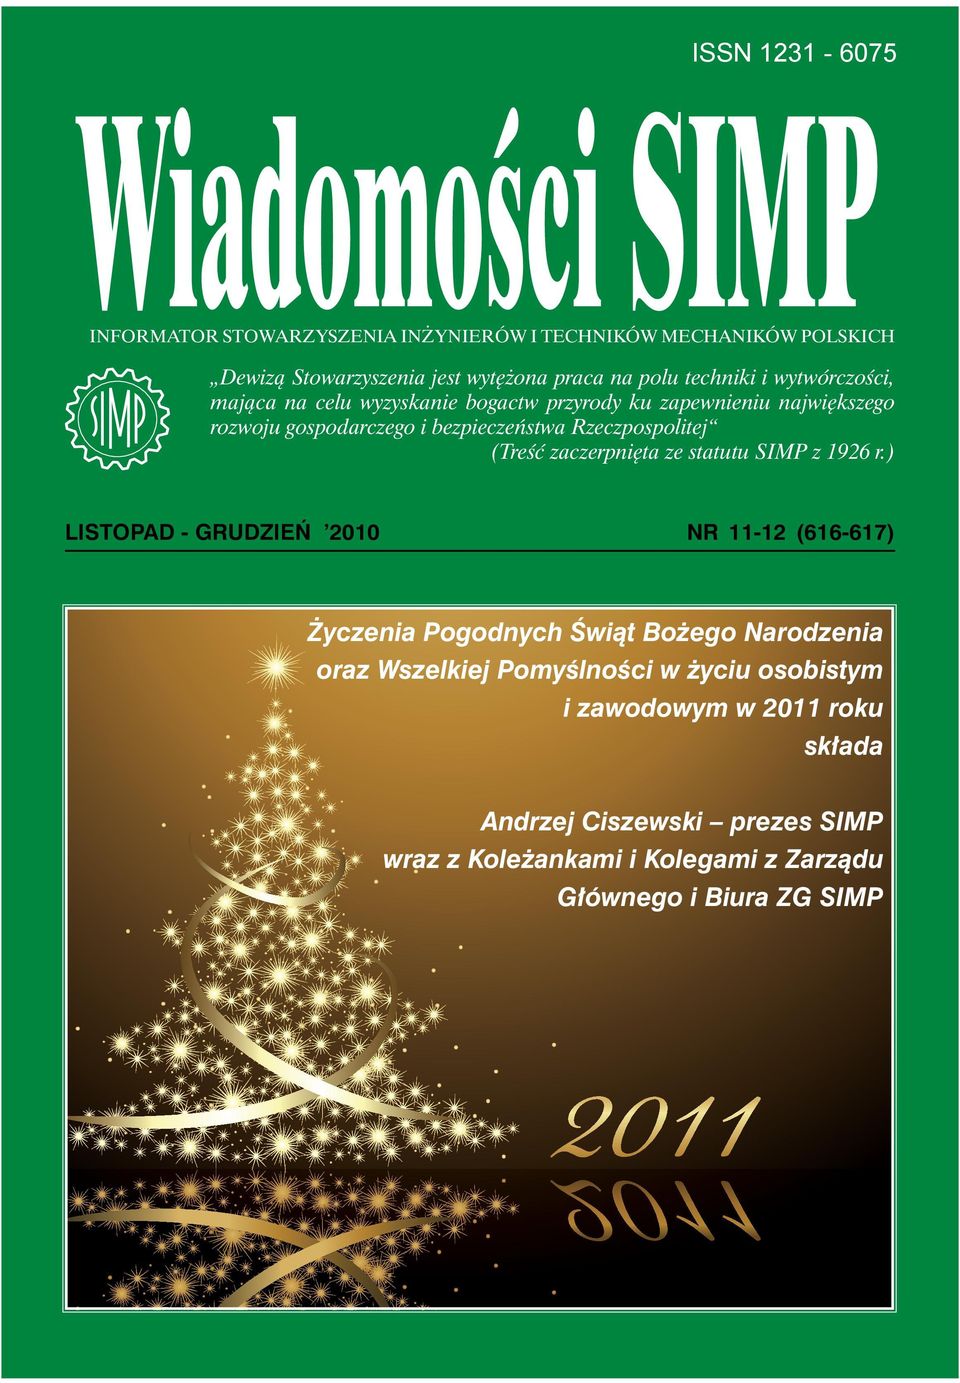 ) LISTOPAD - GRUDZIEŃ 2010 NR 11-12 (616-617) Życzenia Pogodnych Świąt Bożego Narodzenia oraz Wszelkiej Pomyślności w życiu osobistym i zawodowym w 2011 roku składa Andrzej Ciszewski prezes SIMP wraz